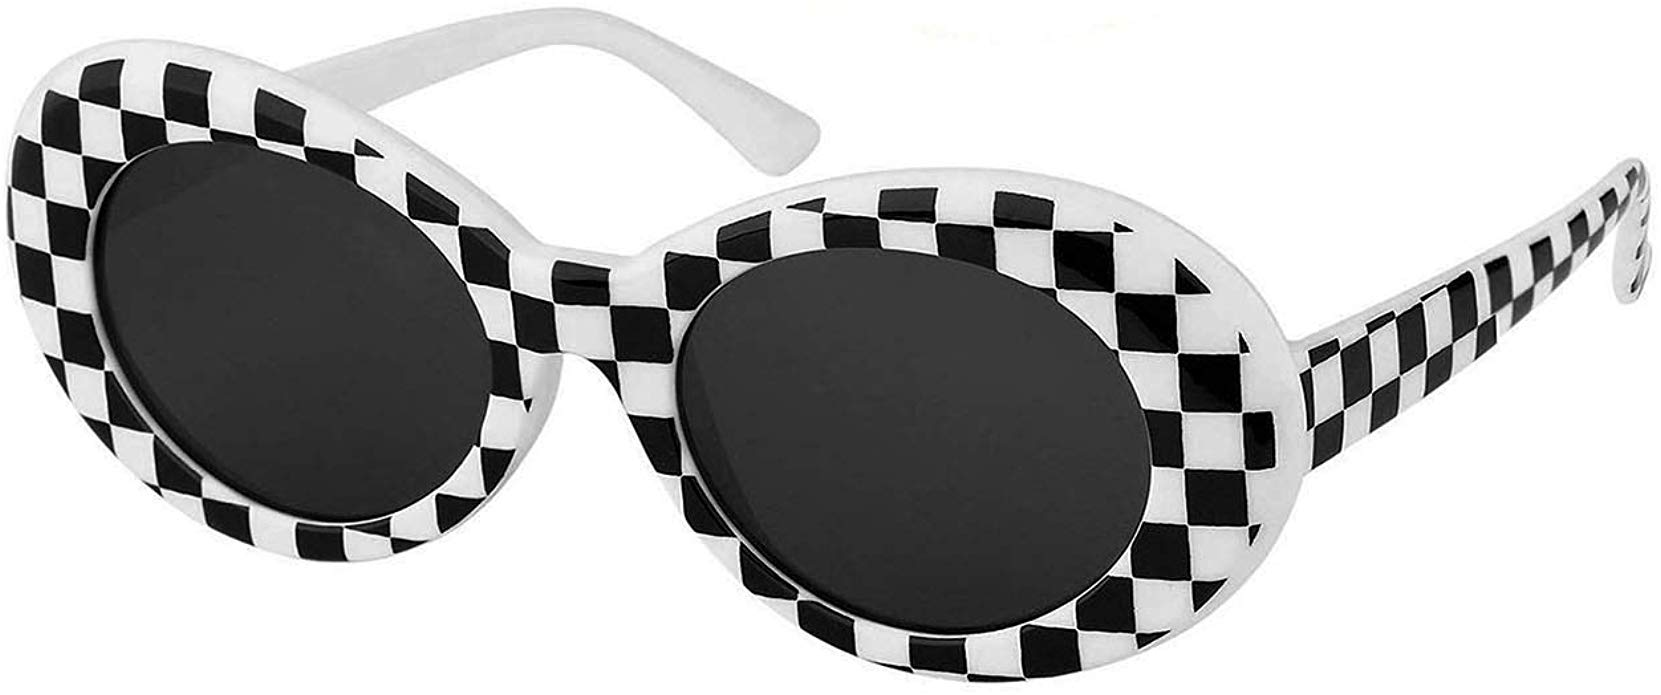 QIFANDI UV400 Clout Goggles Bold Retro Oval Mod Thick Frame Sunglasses